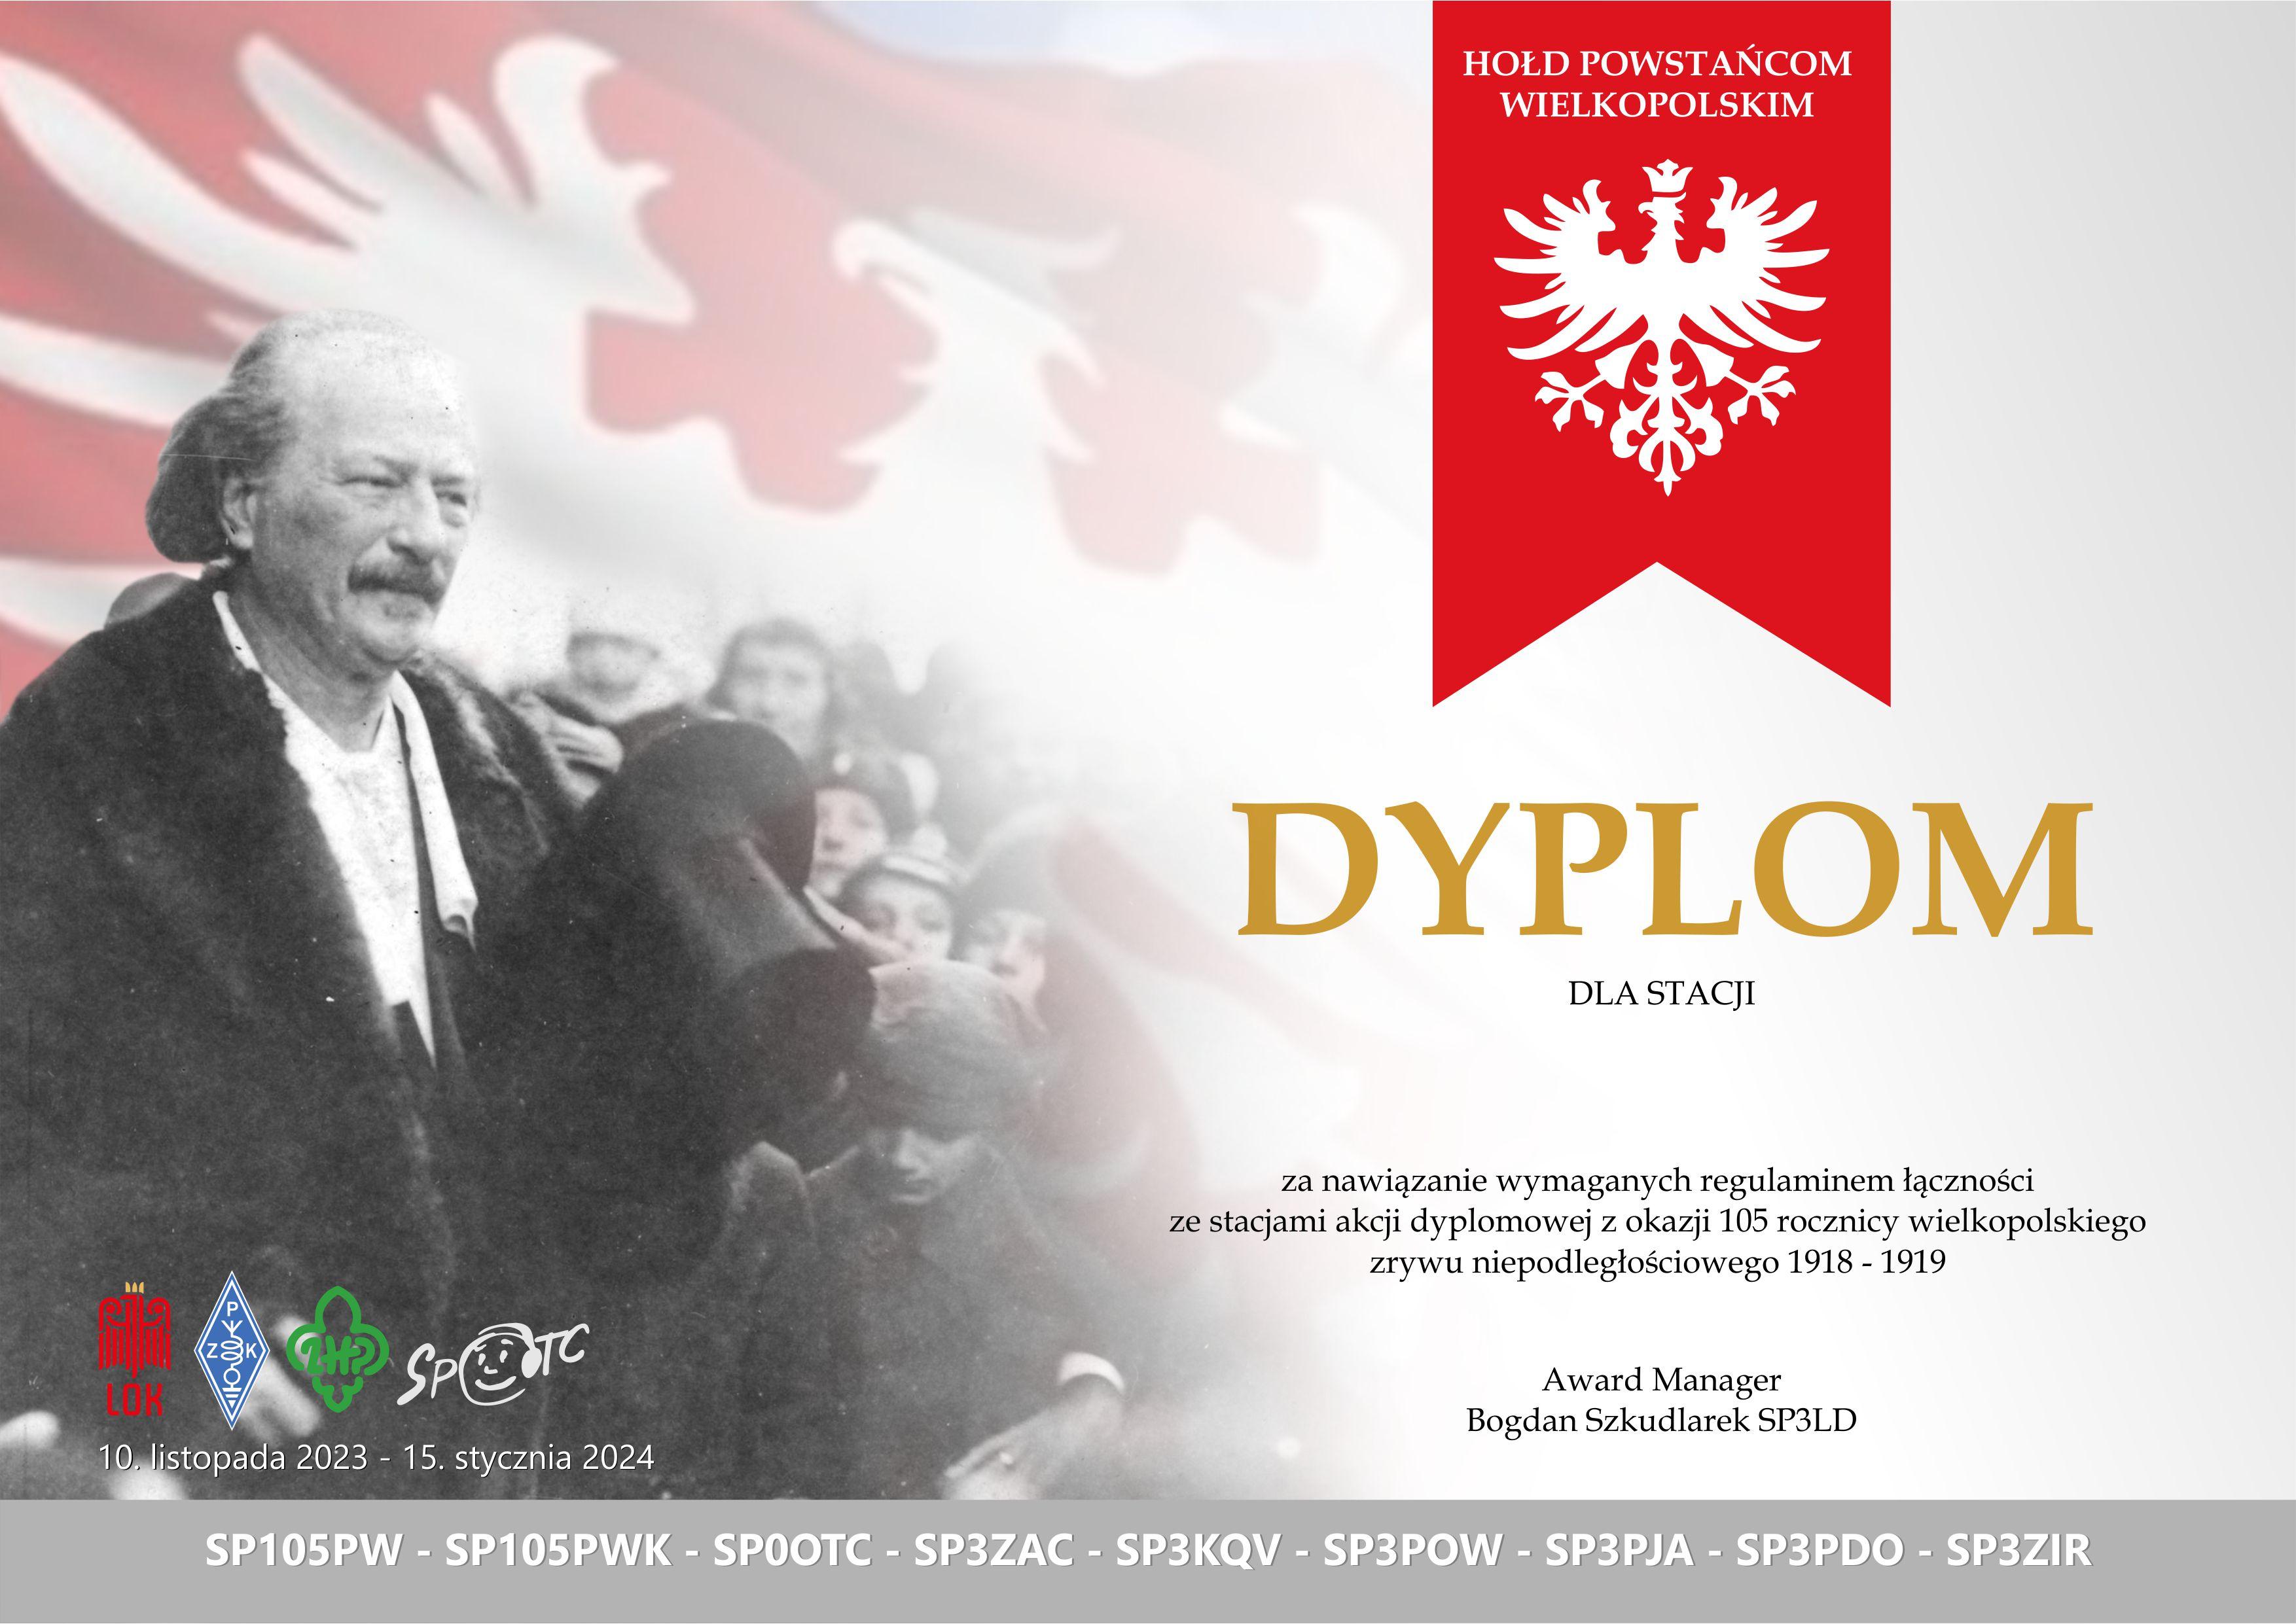 Akcja dyplomowa z okazji 105. rocznicy Wielkopolskiego Zrywu Niepodległościowego 1918/19 organizowana przez krótkofalowców z Wielkopolski